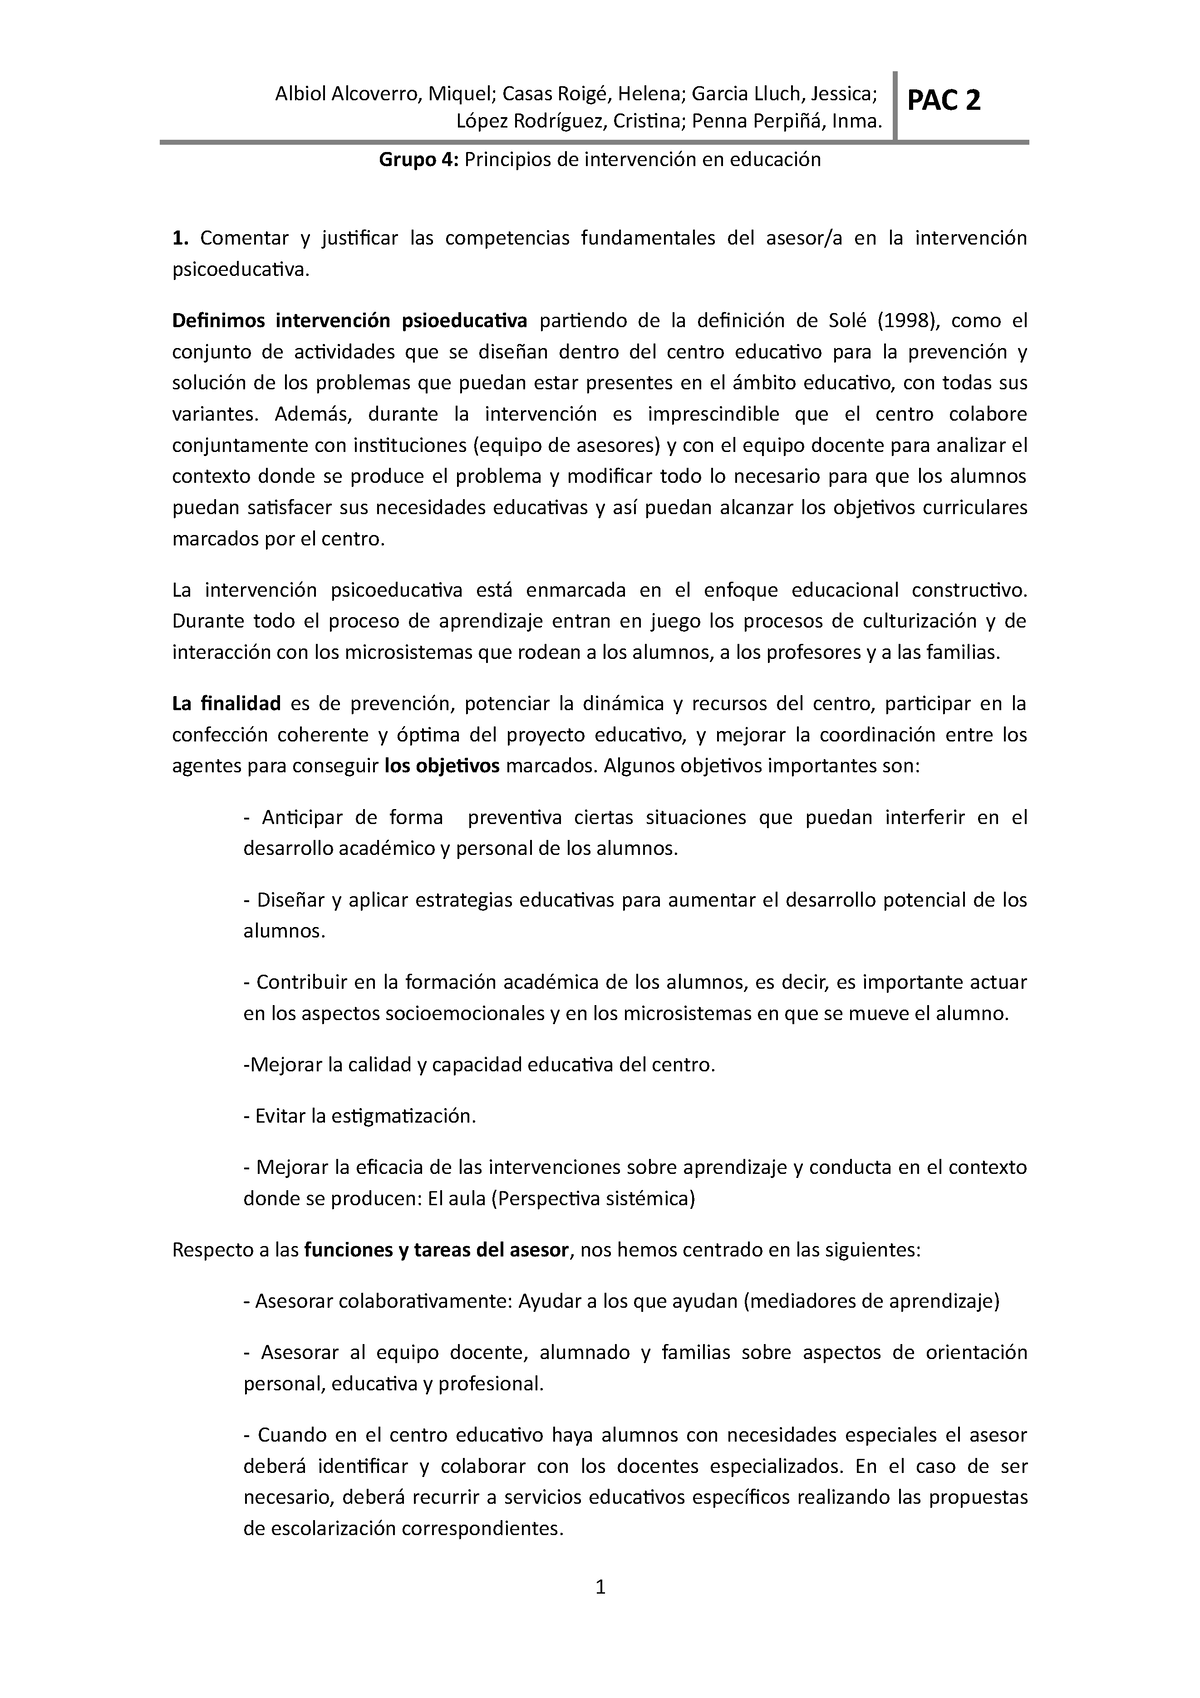 PAC 2 Resposta - PAC 2 Solucion corregida universidad UOC Ppios de ...